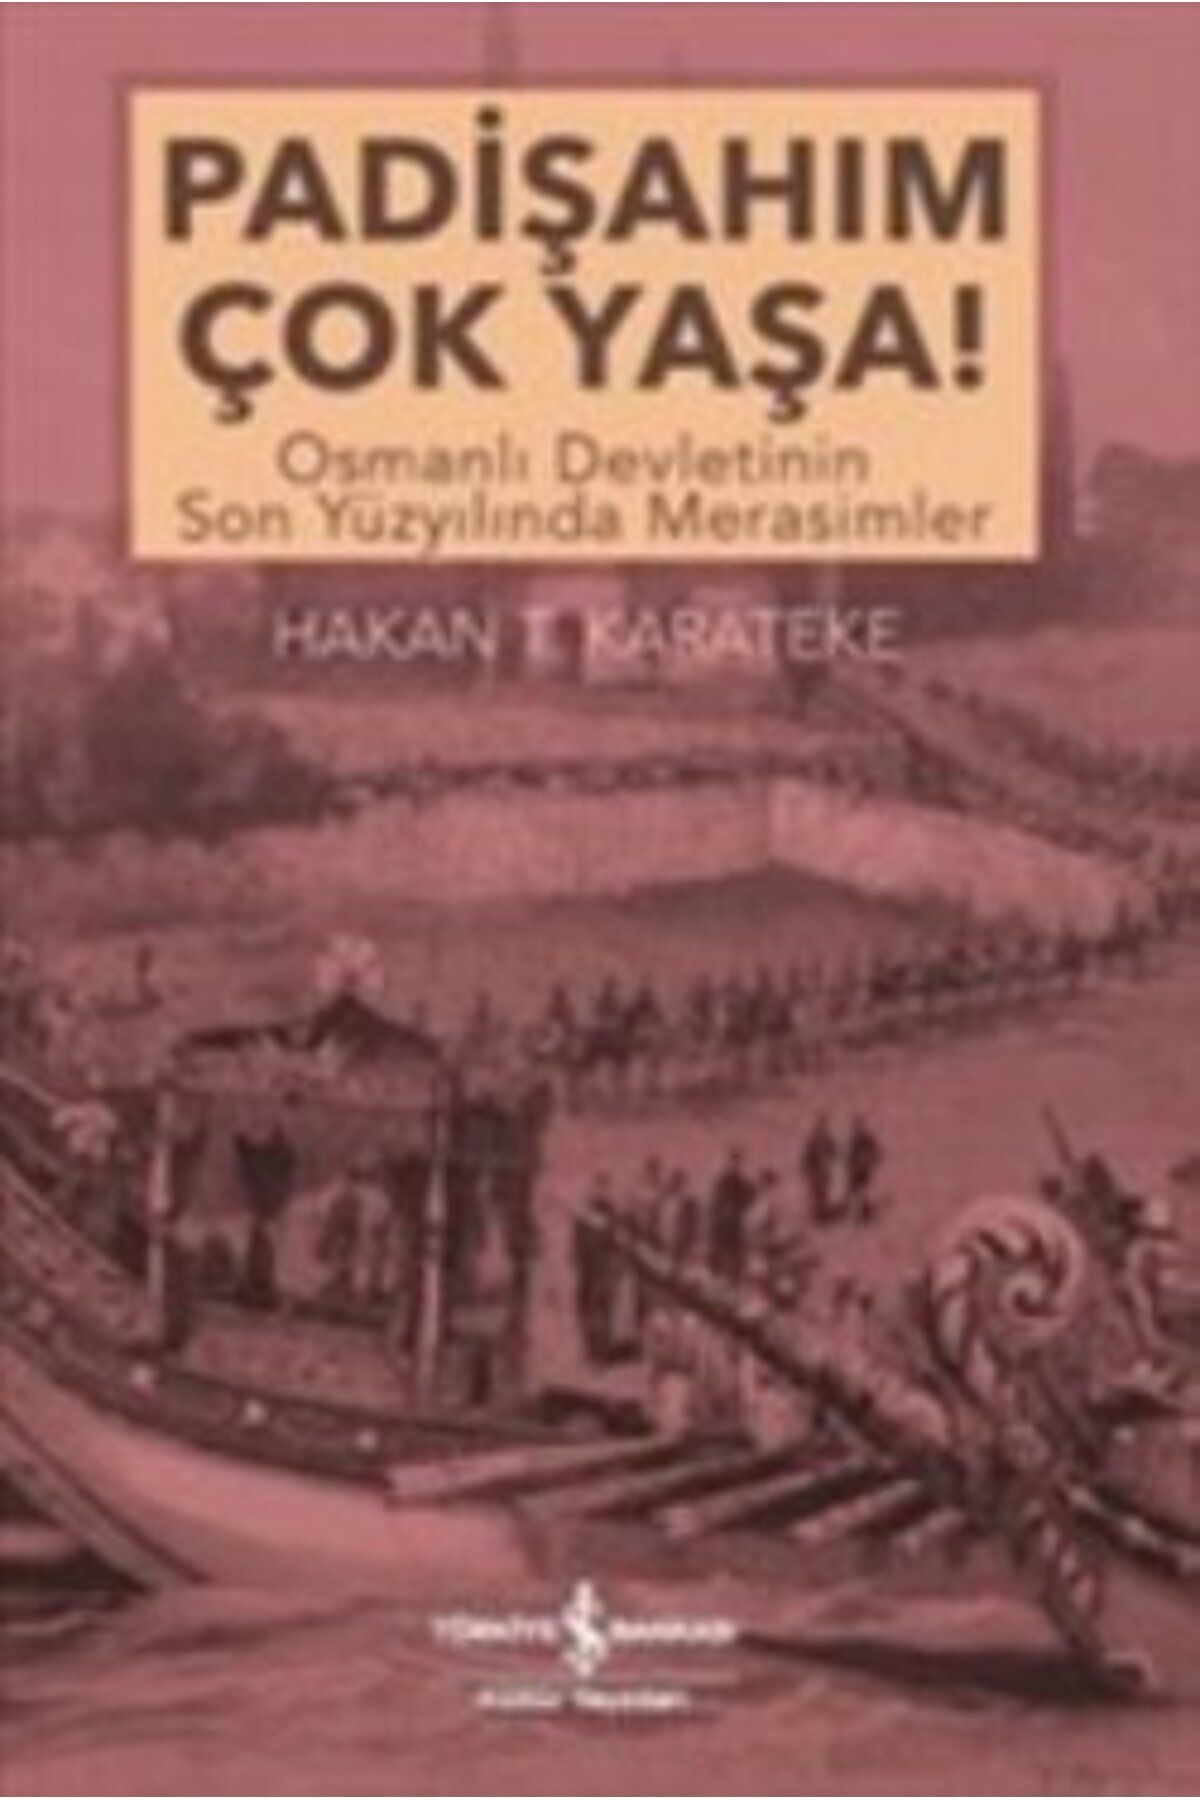 Türkiye İş Bankası Kültür Yayınları Padişahım Çok Yaşa : Osmanlı Devletinin Son Yüzyılında Merasimler